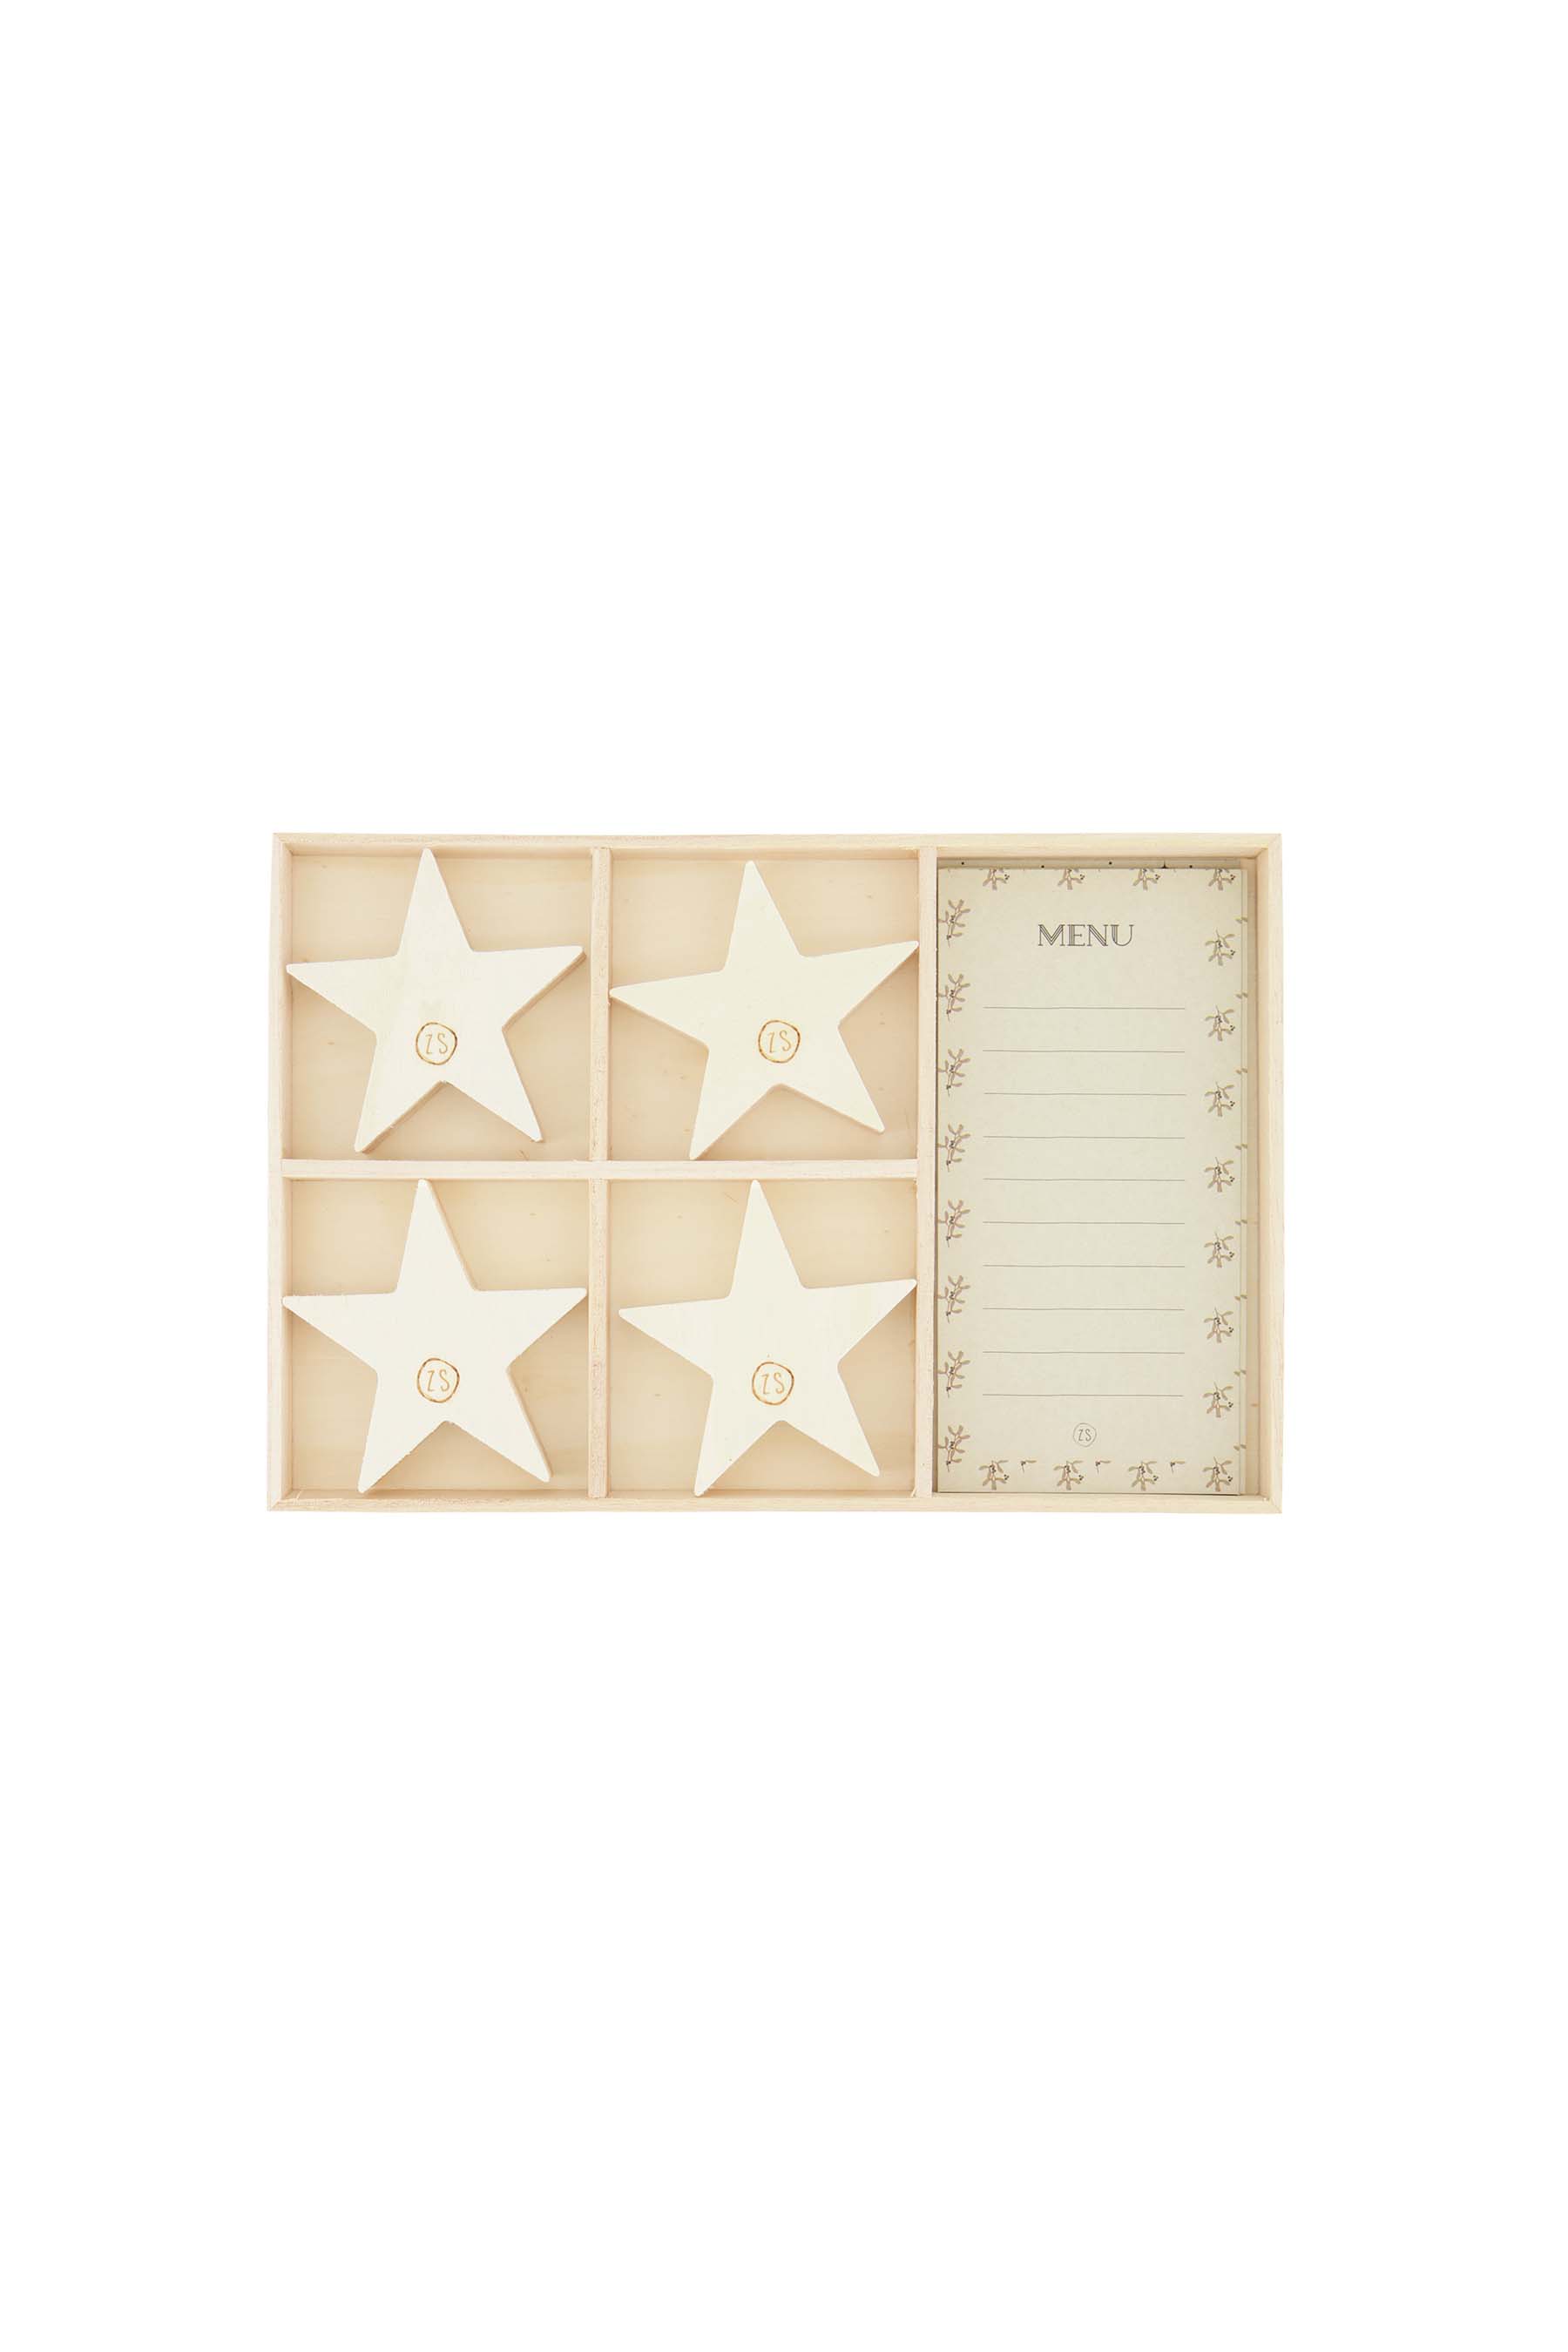 Menukaartjes met houten standaard ster